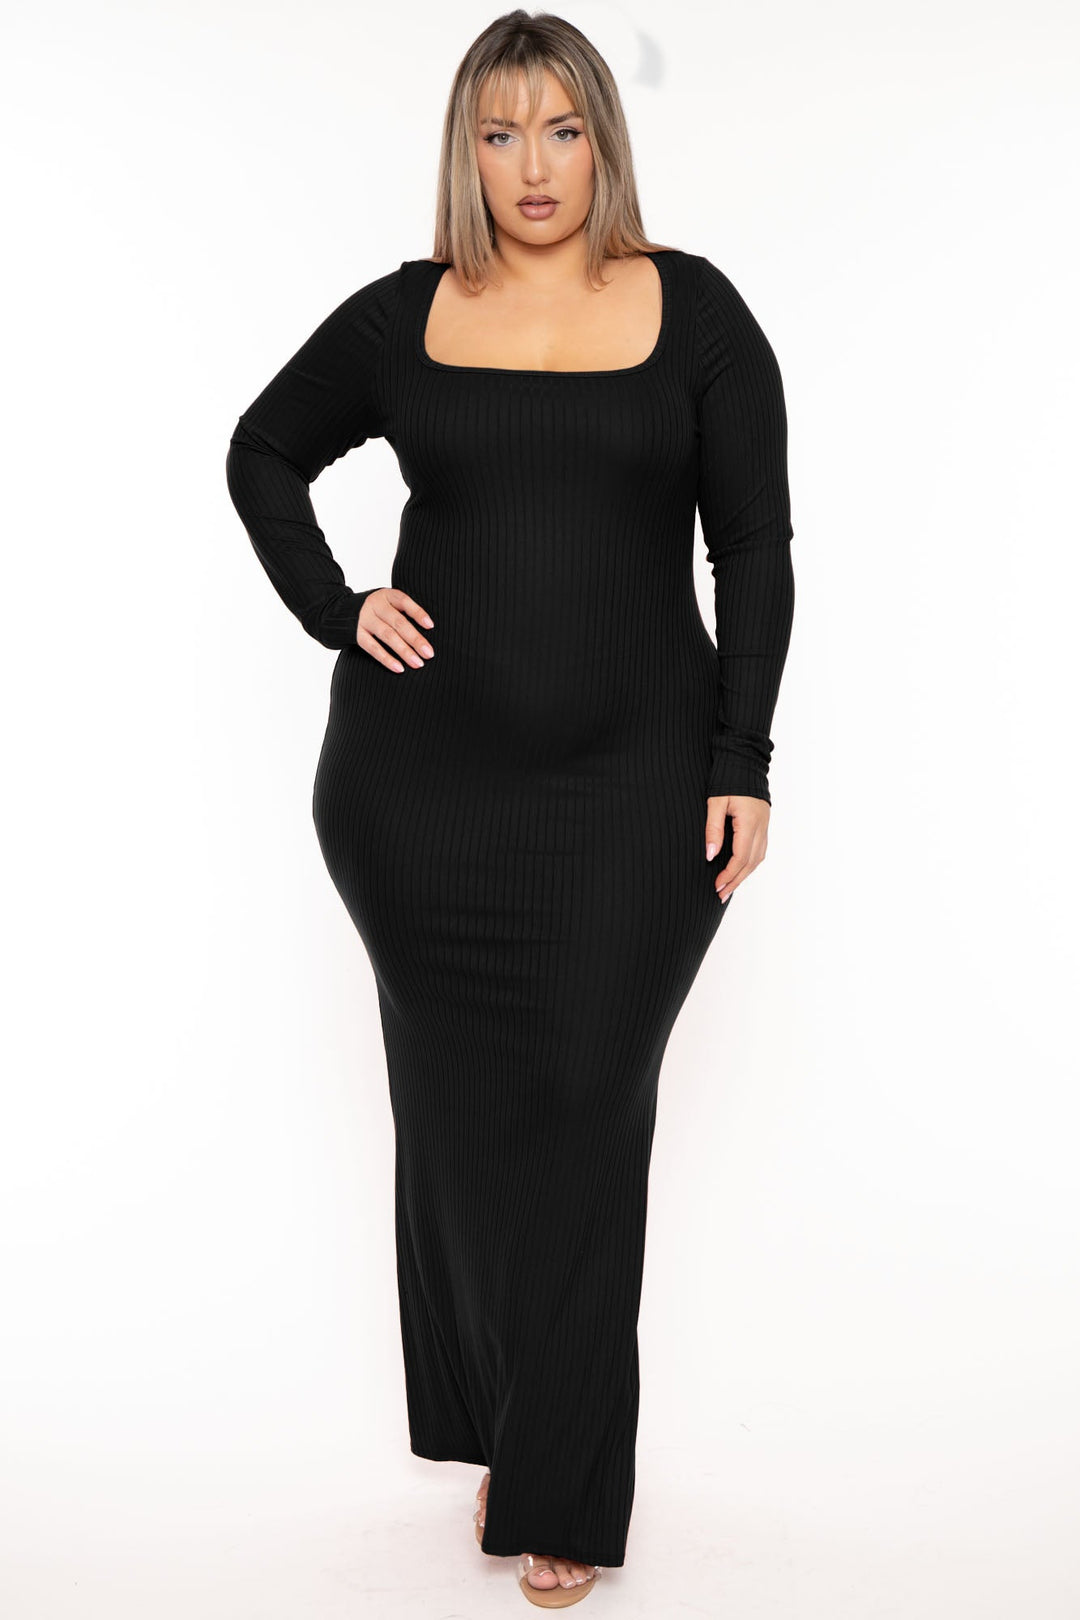 Curvy Sense - Trendy Plus Size Little Black Dresses